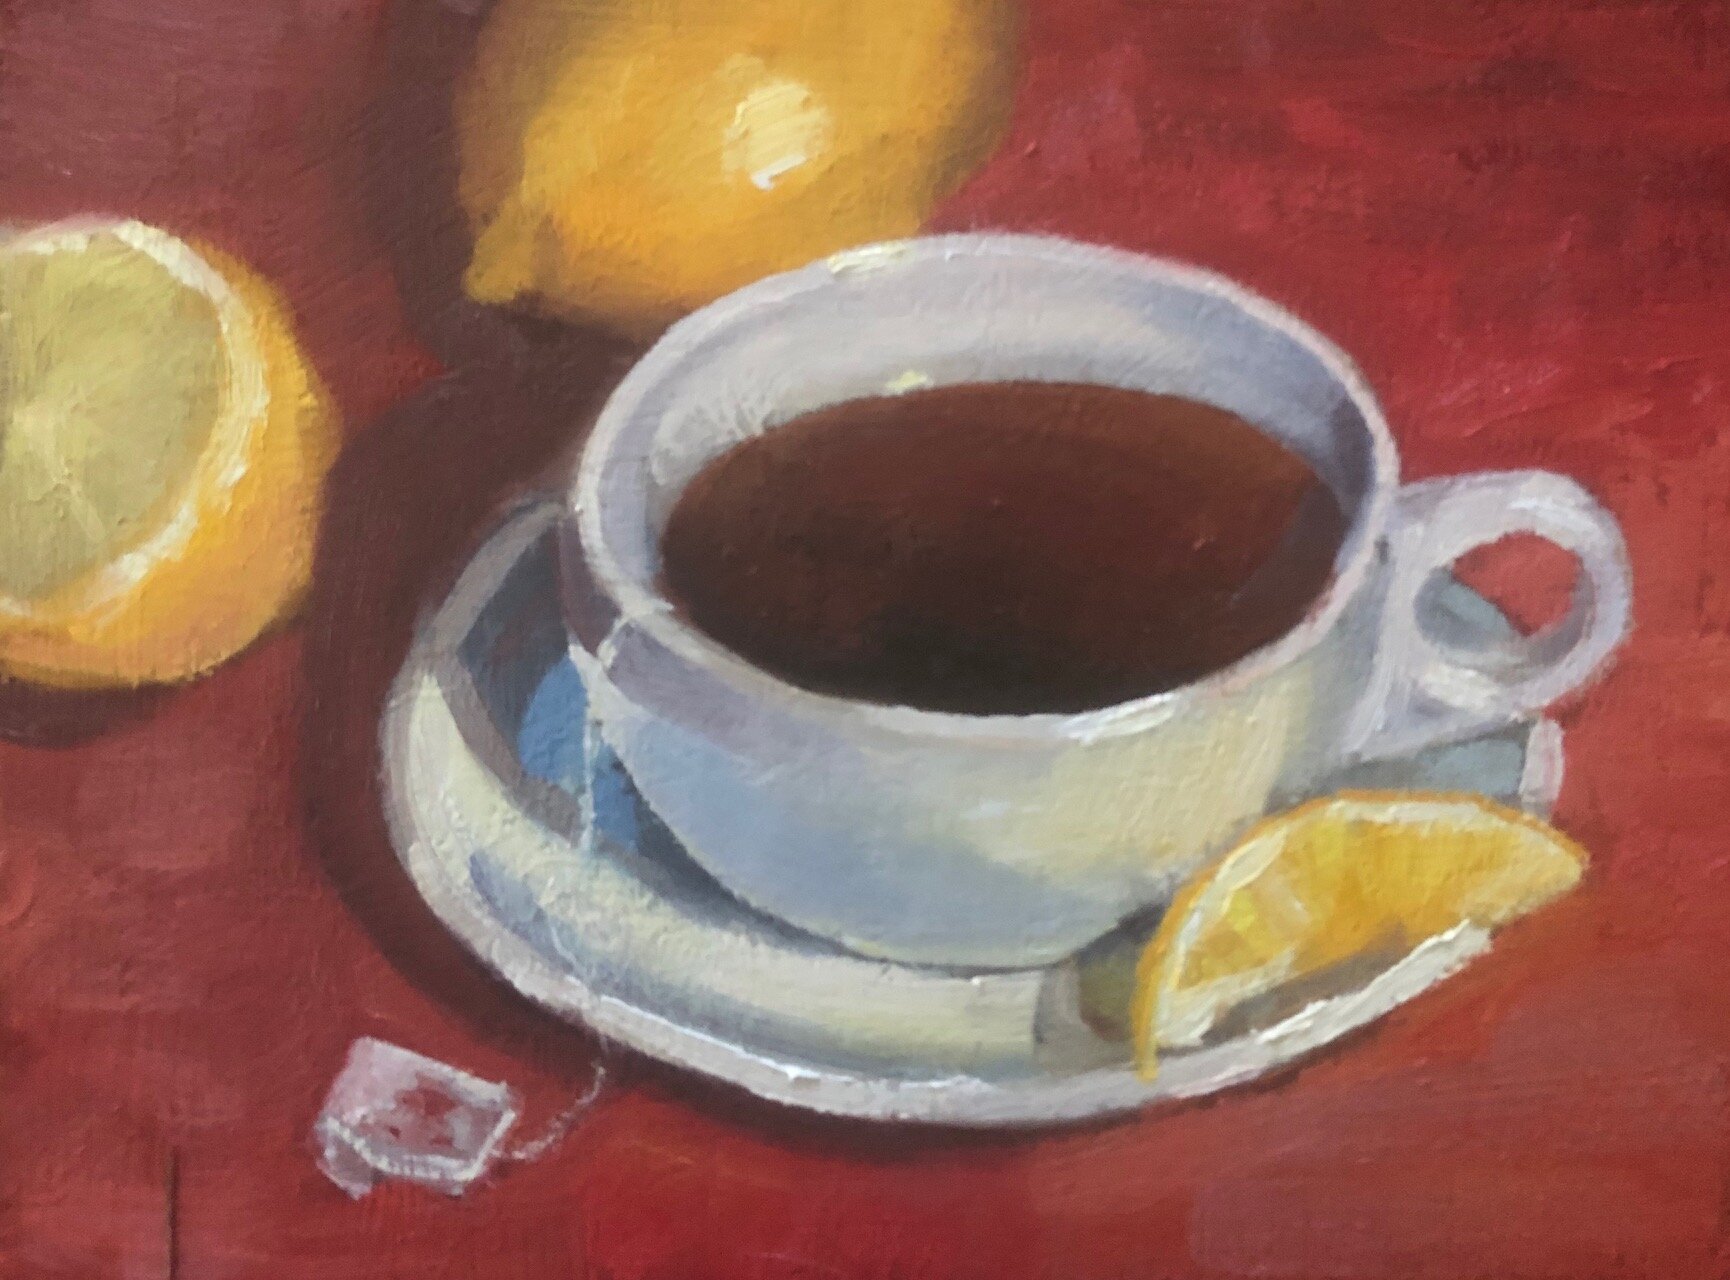  Tea and Lemon - 6x8 